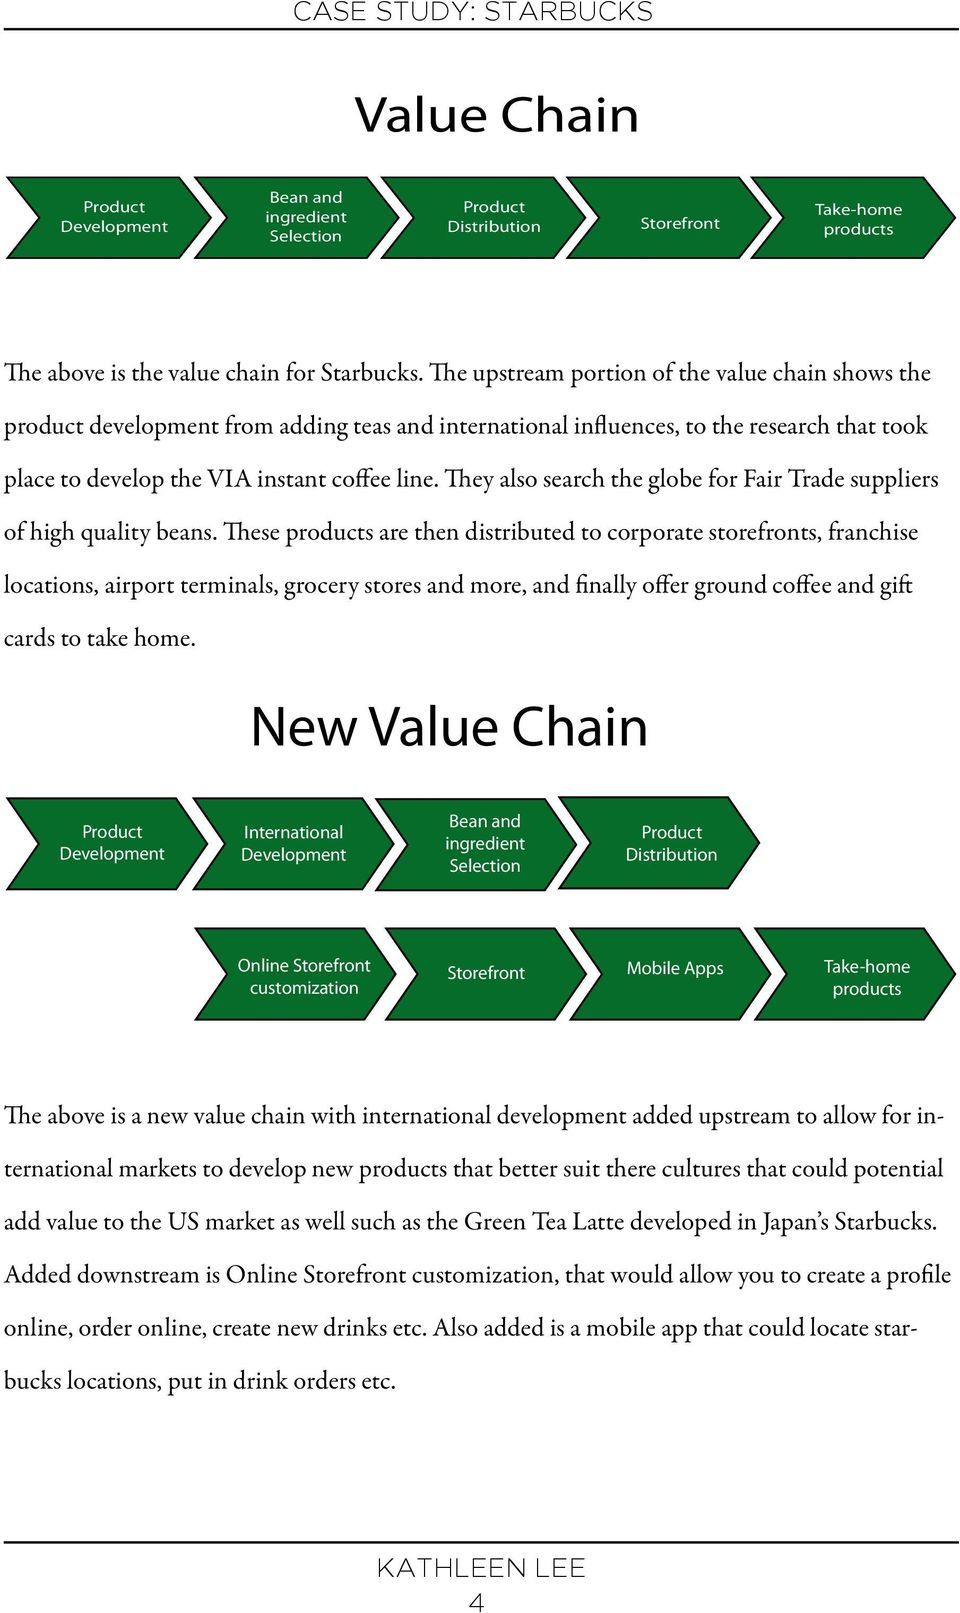 starbucks value chain